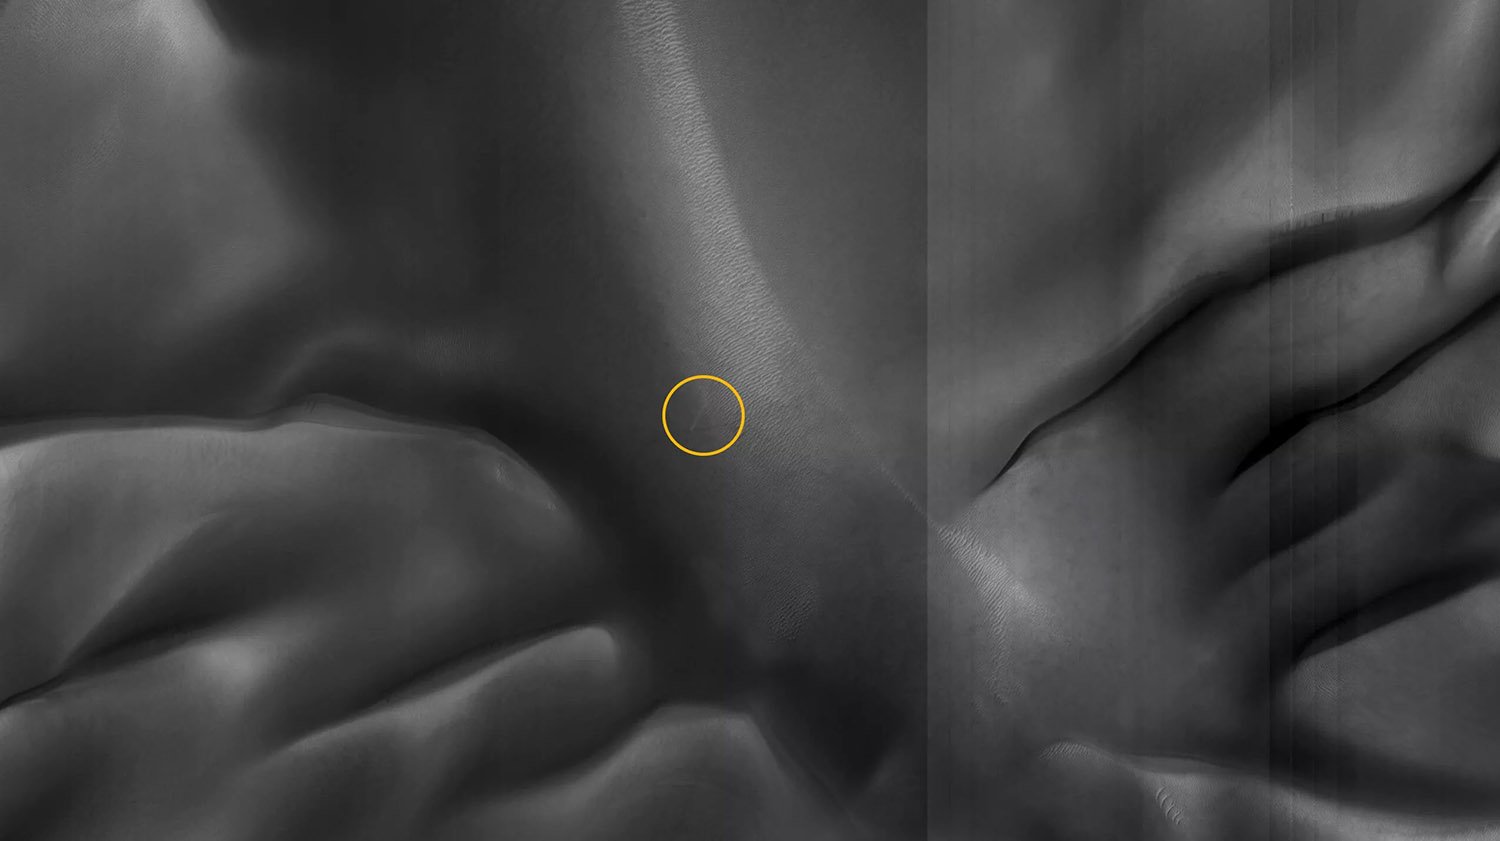 Área ampliada onde o MRO viu o redemoinho solitário, marcado por um círculo amarelo (Fonte: NASA/JPL/UArizona/Divulgação)